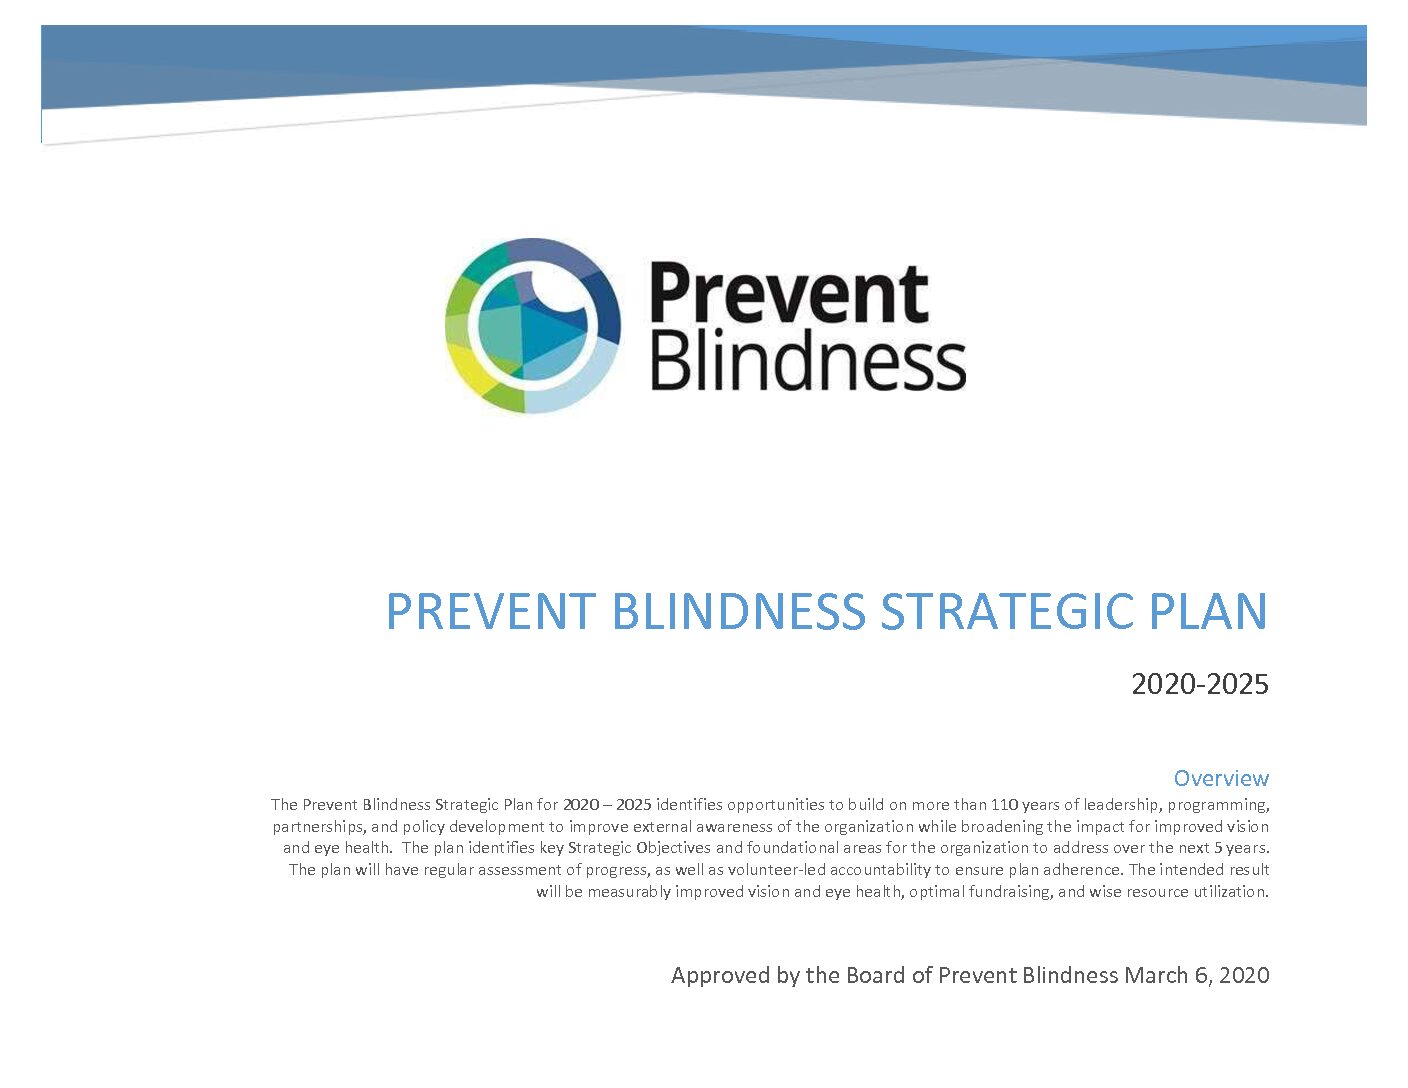 Prevent Blindness 2020-2025 Strategic Plan